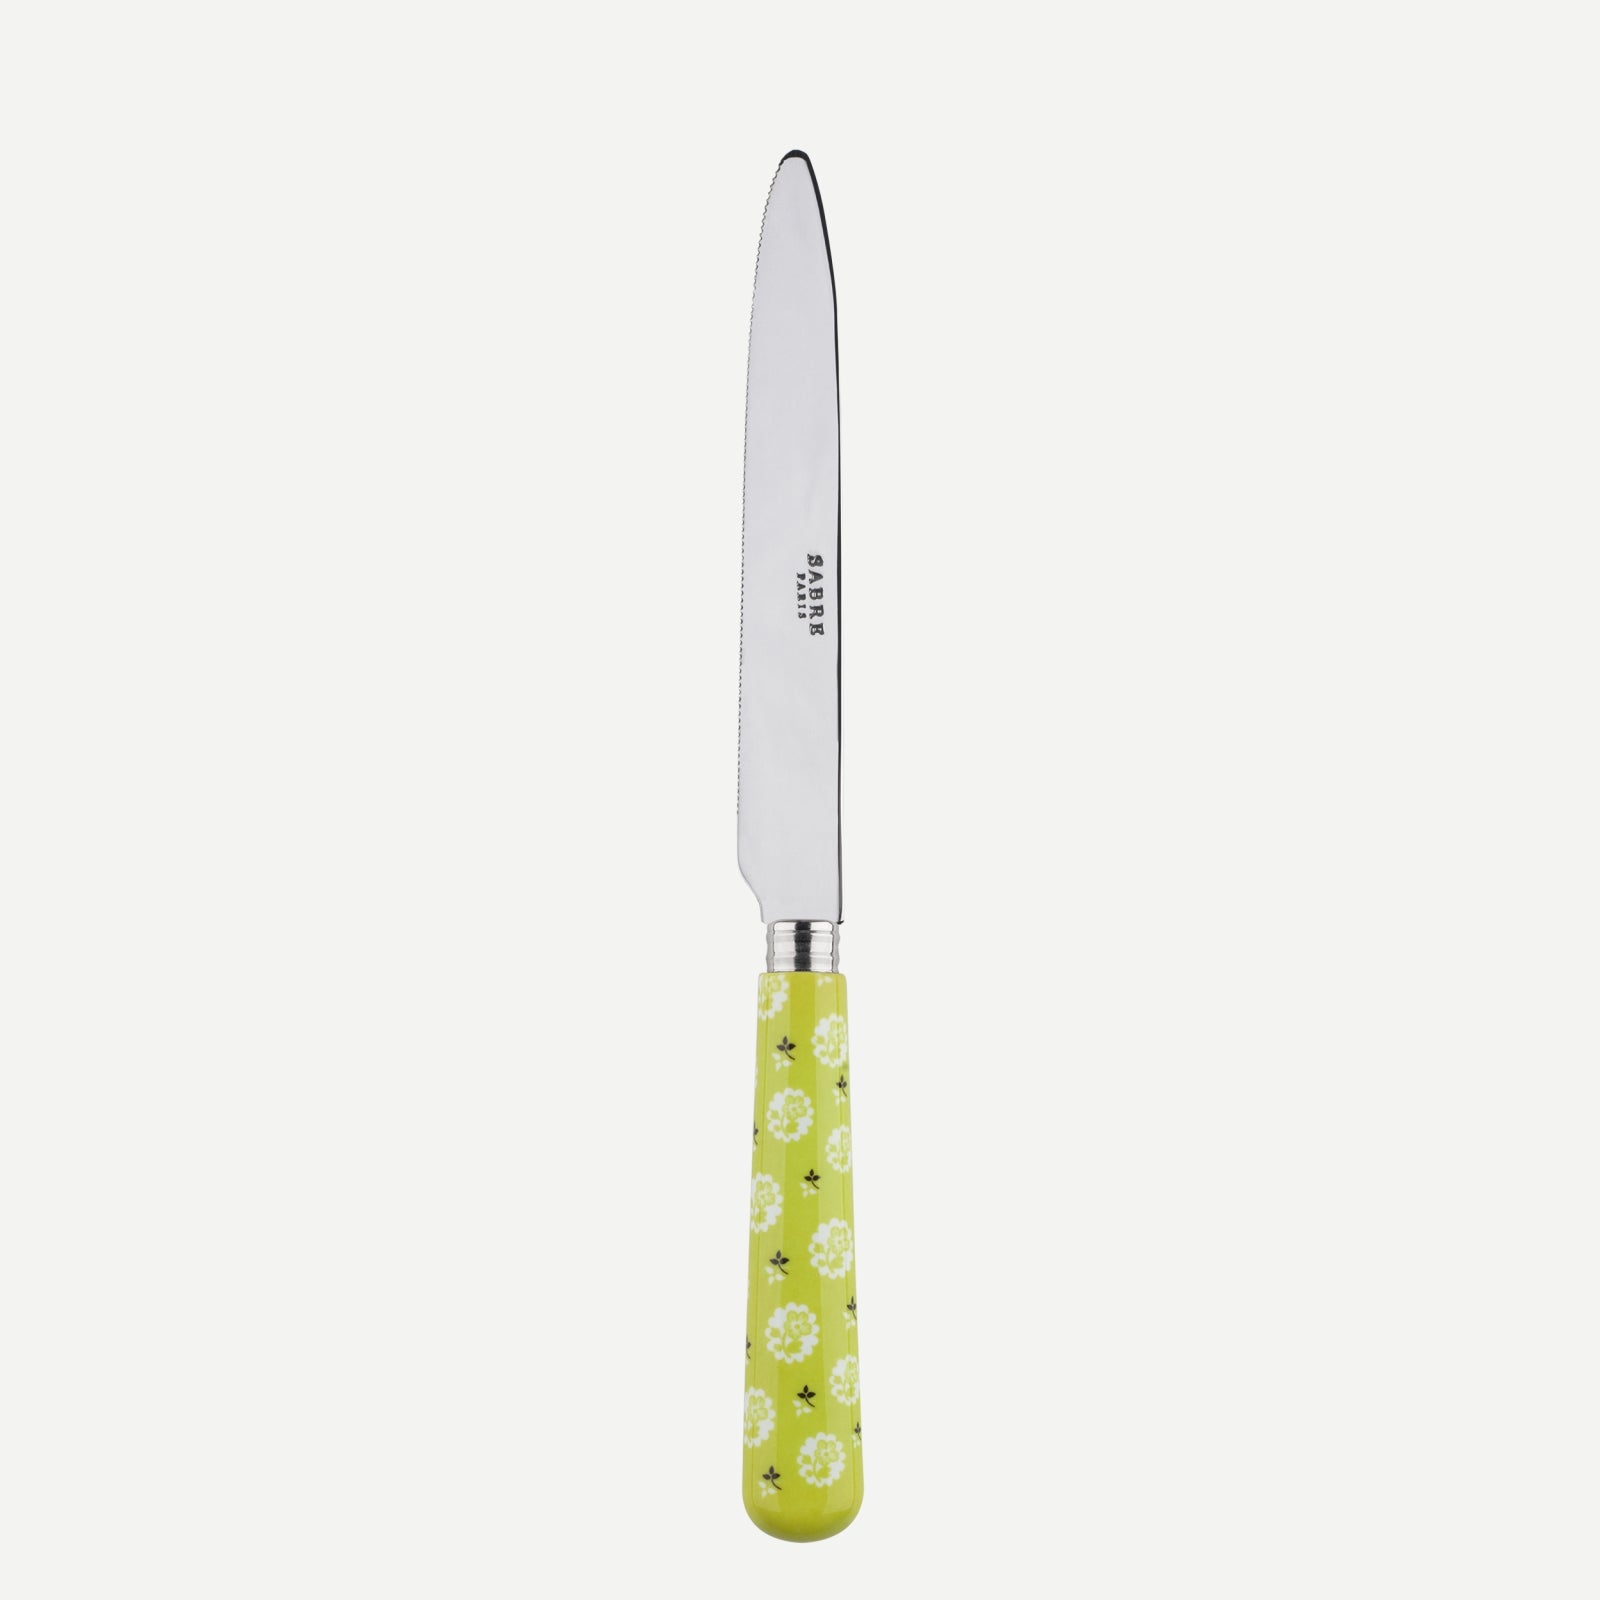 Serrated Dinner knife Blade - Provencal - Light green